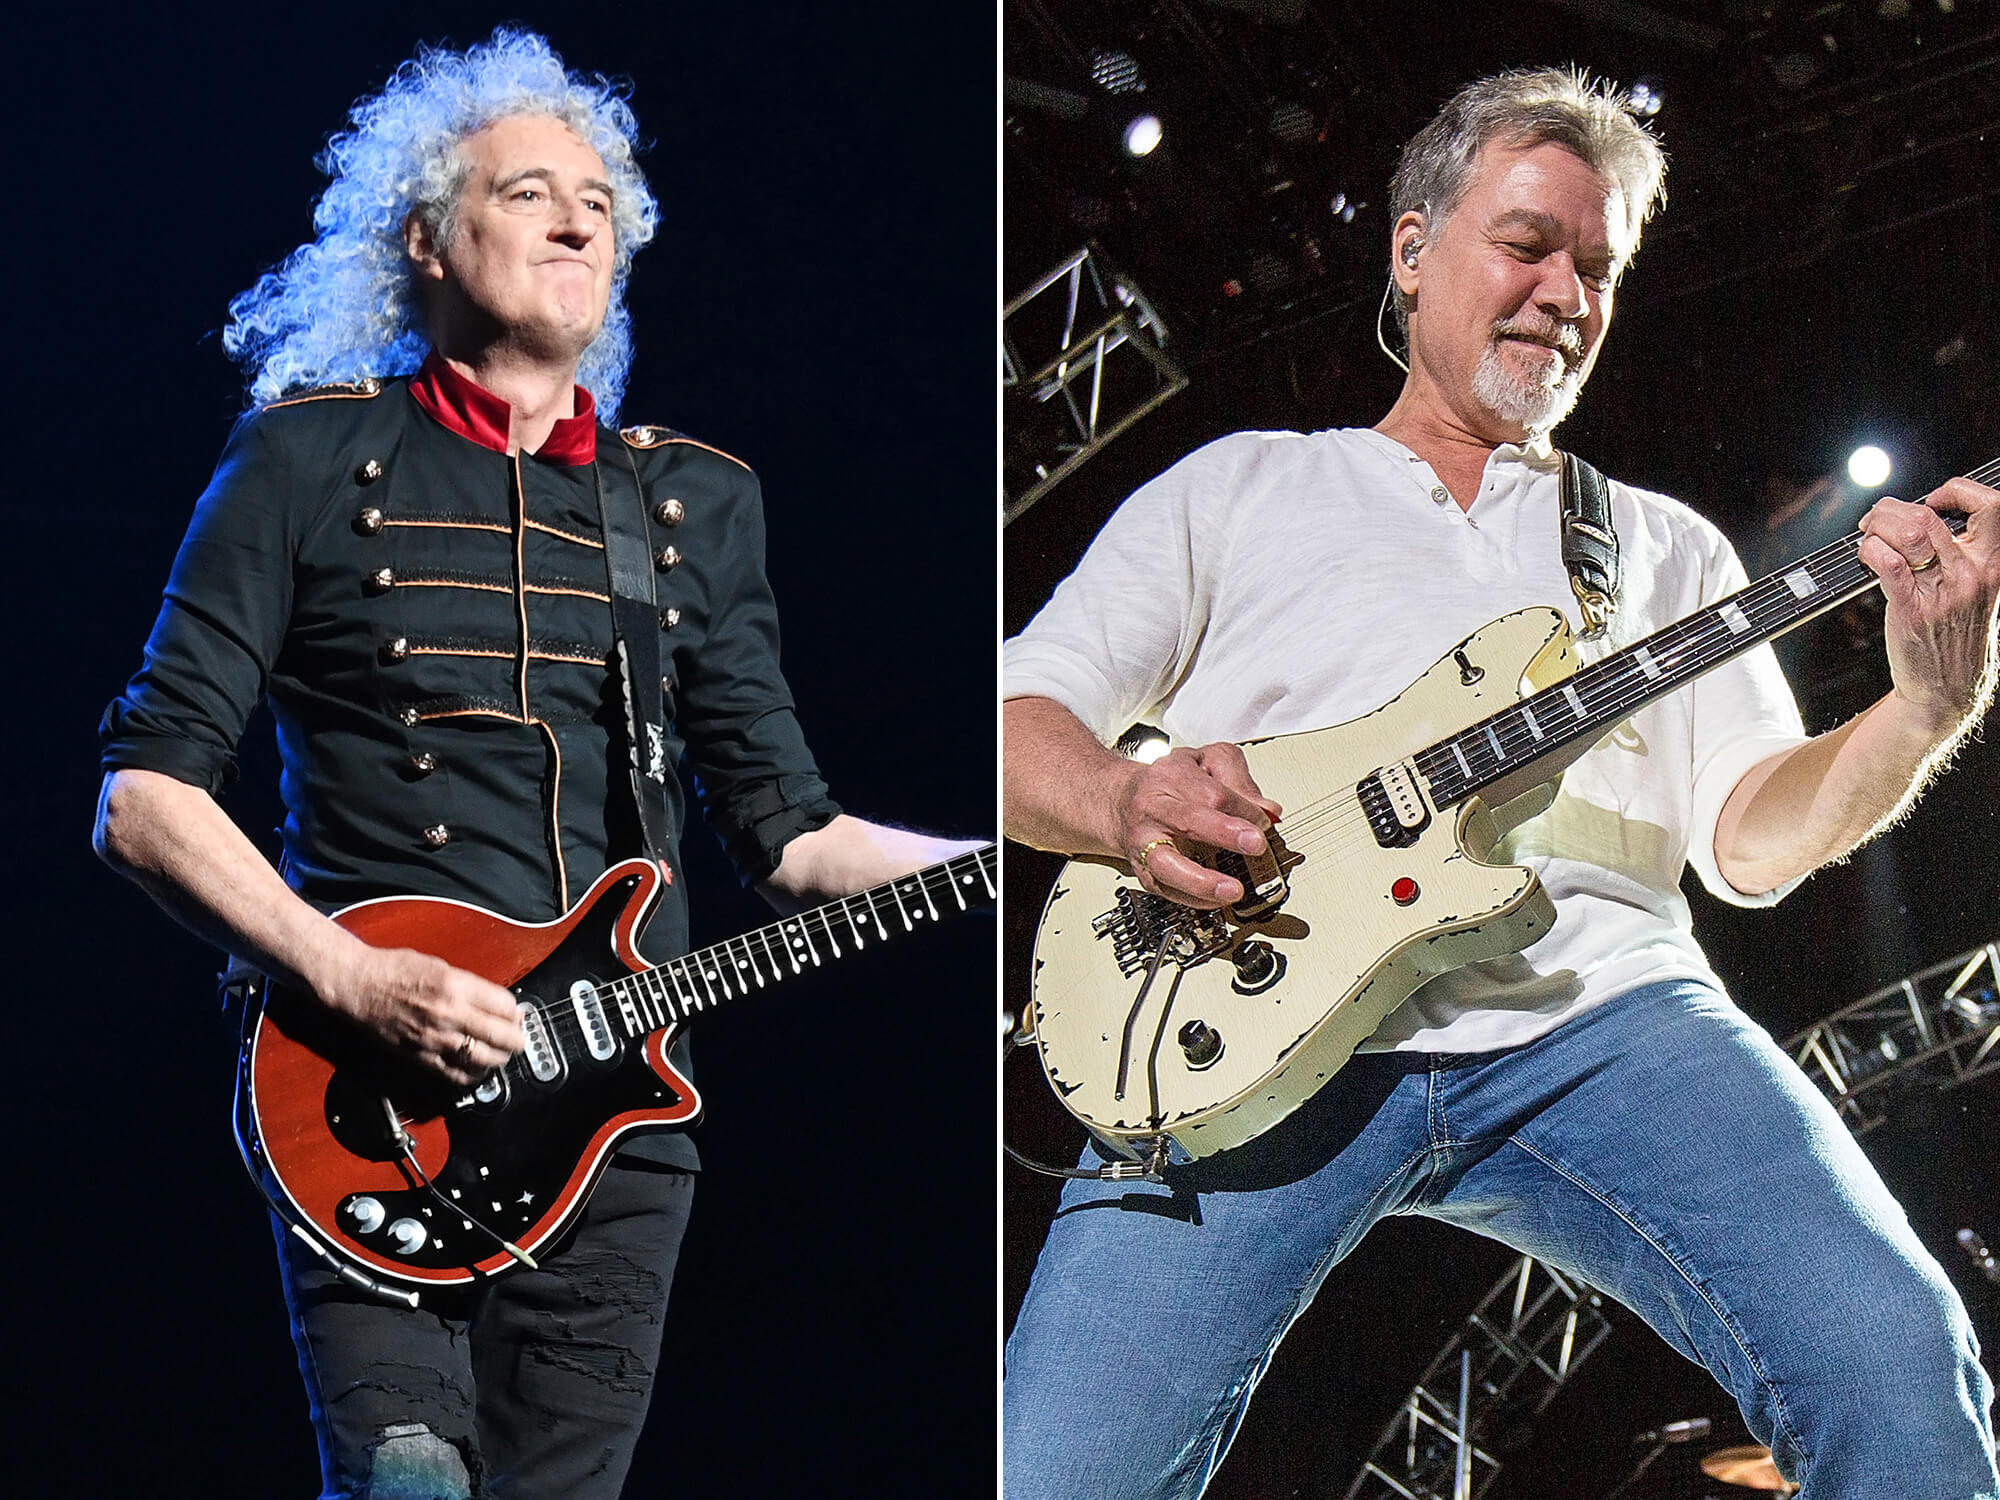 [L-R] Brian May and Eddie Van Halen